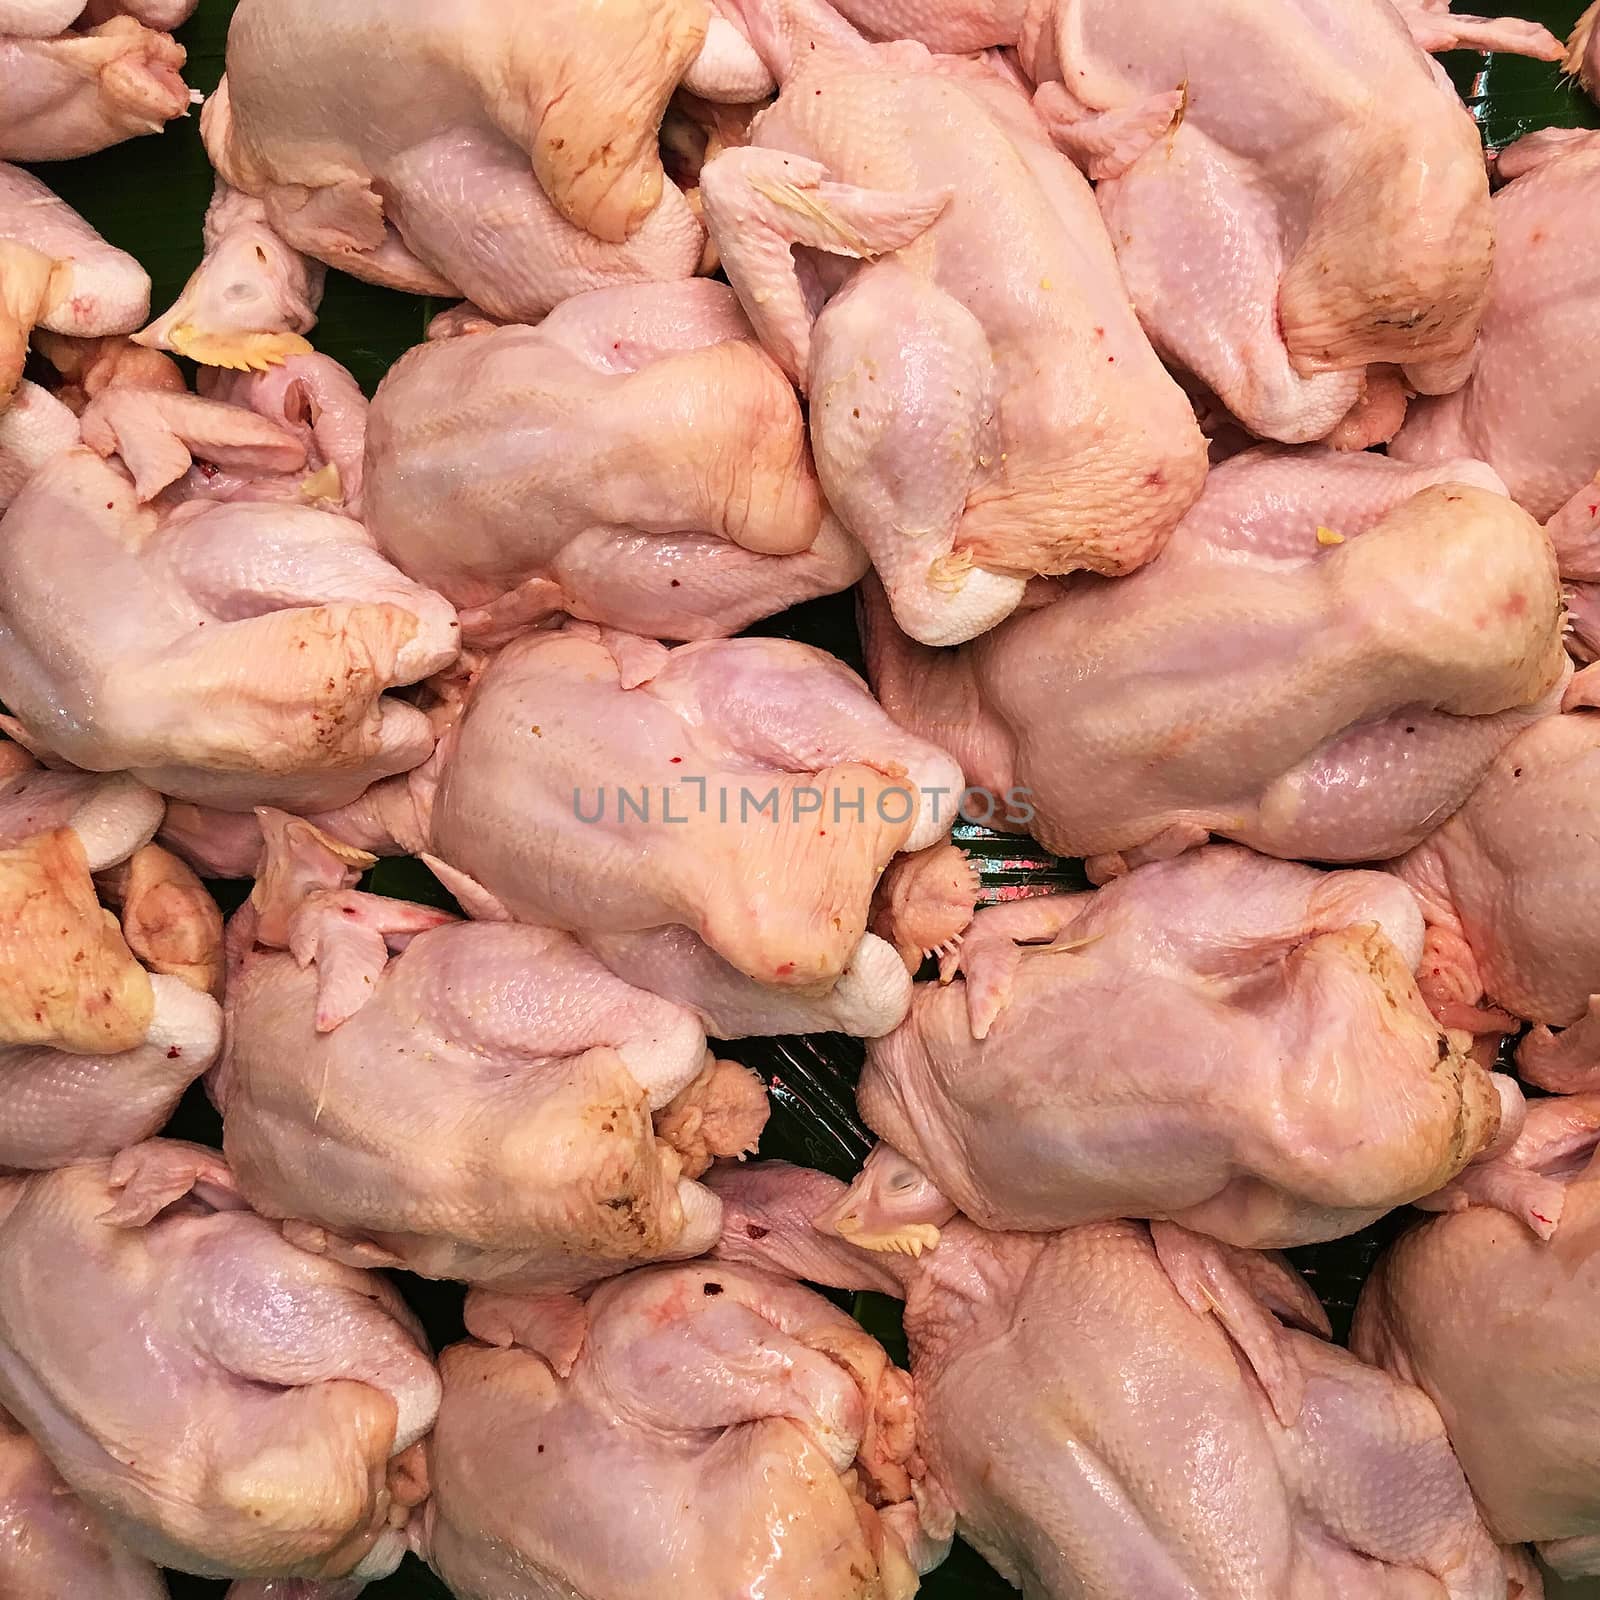 Dead chicken in Market by Surasak